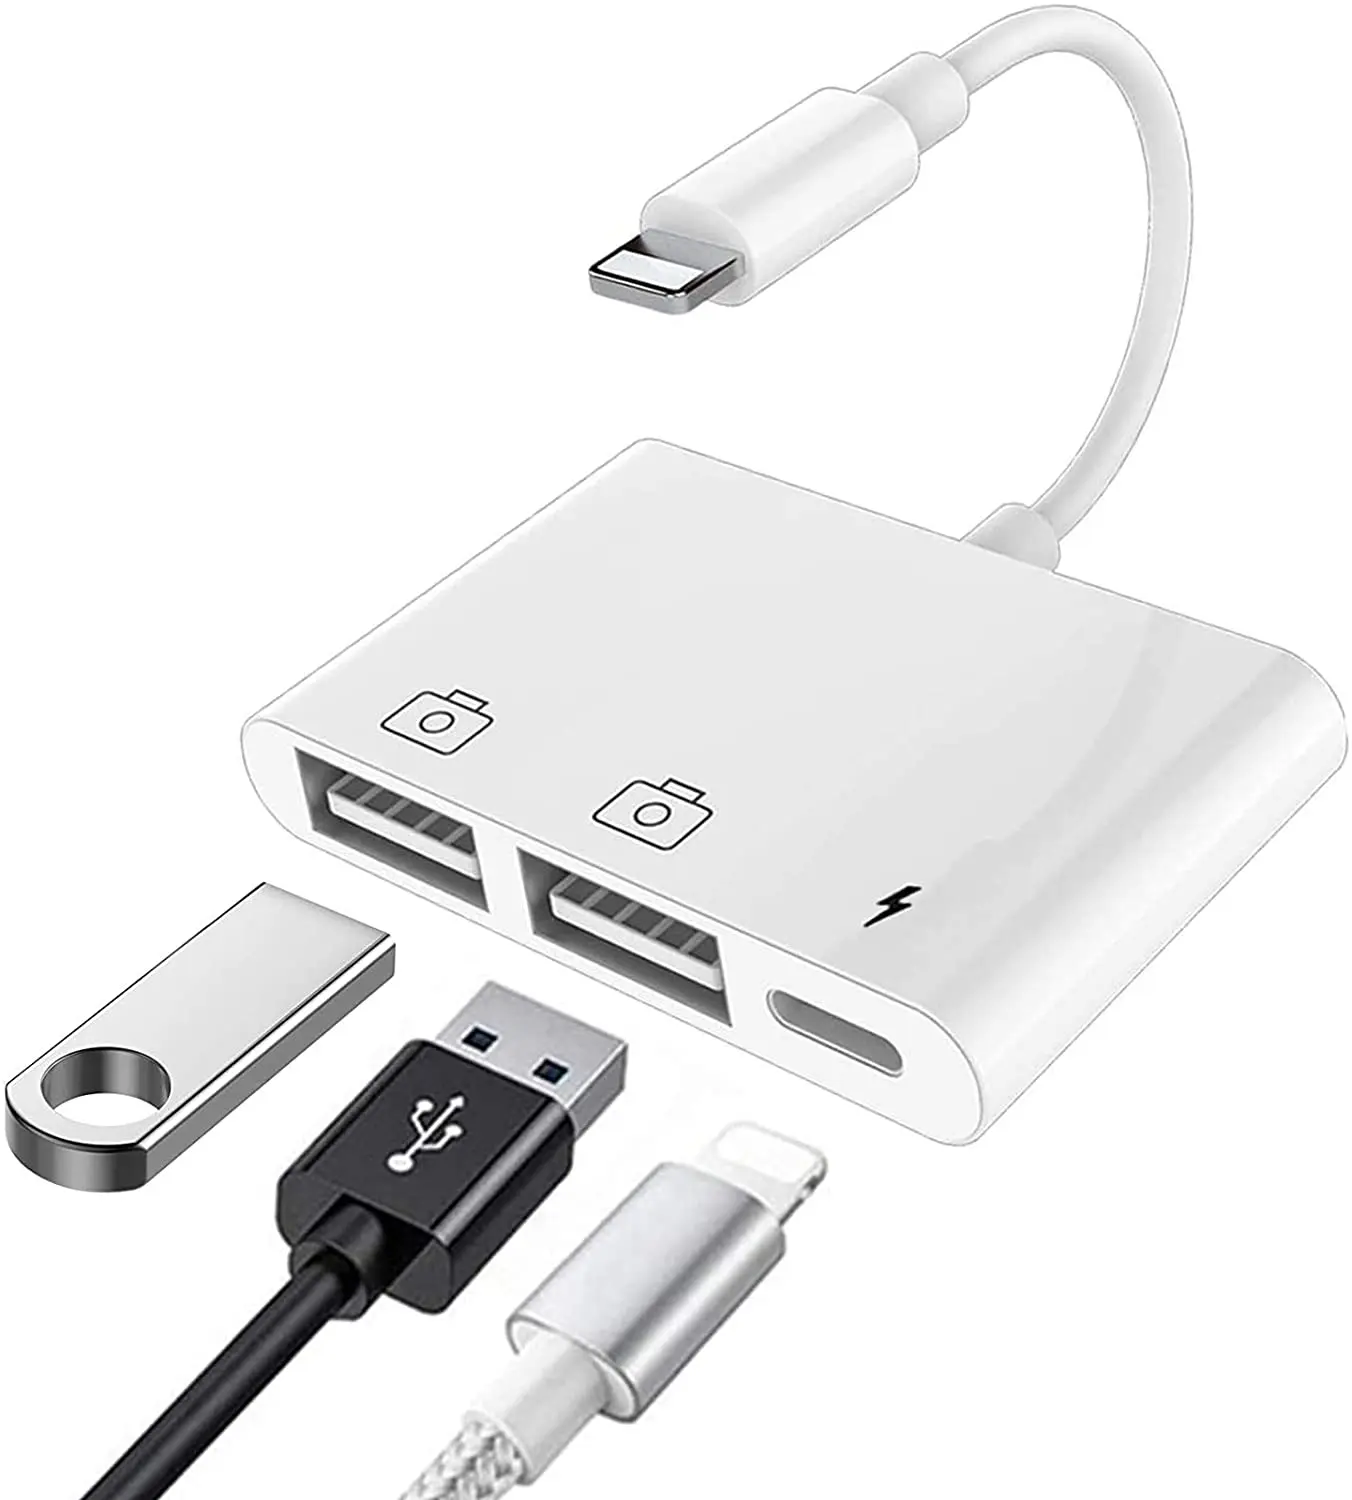 עבור אפל USB מצלמה קורא ממיר תאורה כדי USB 3 מצלמה מתאם מחבר USB OTG מתאם עבור iPhone